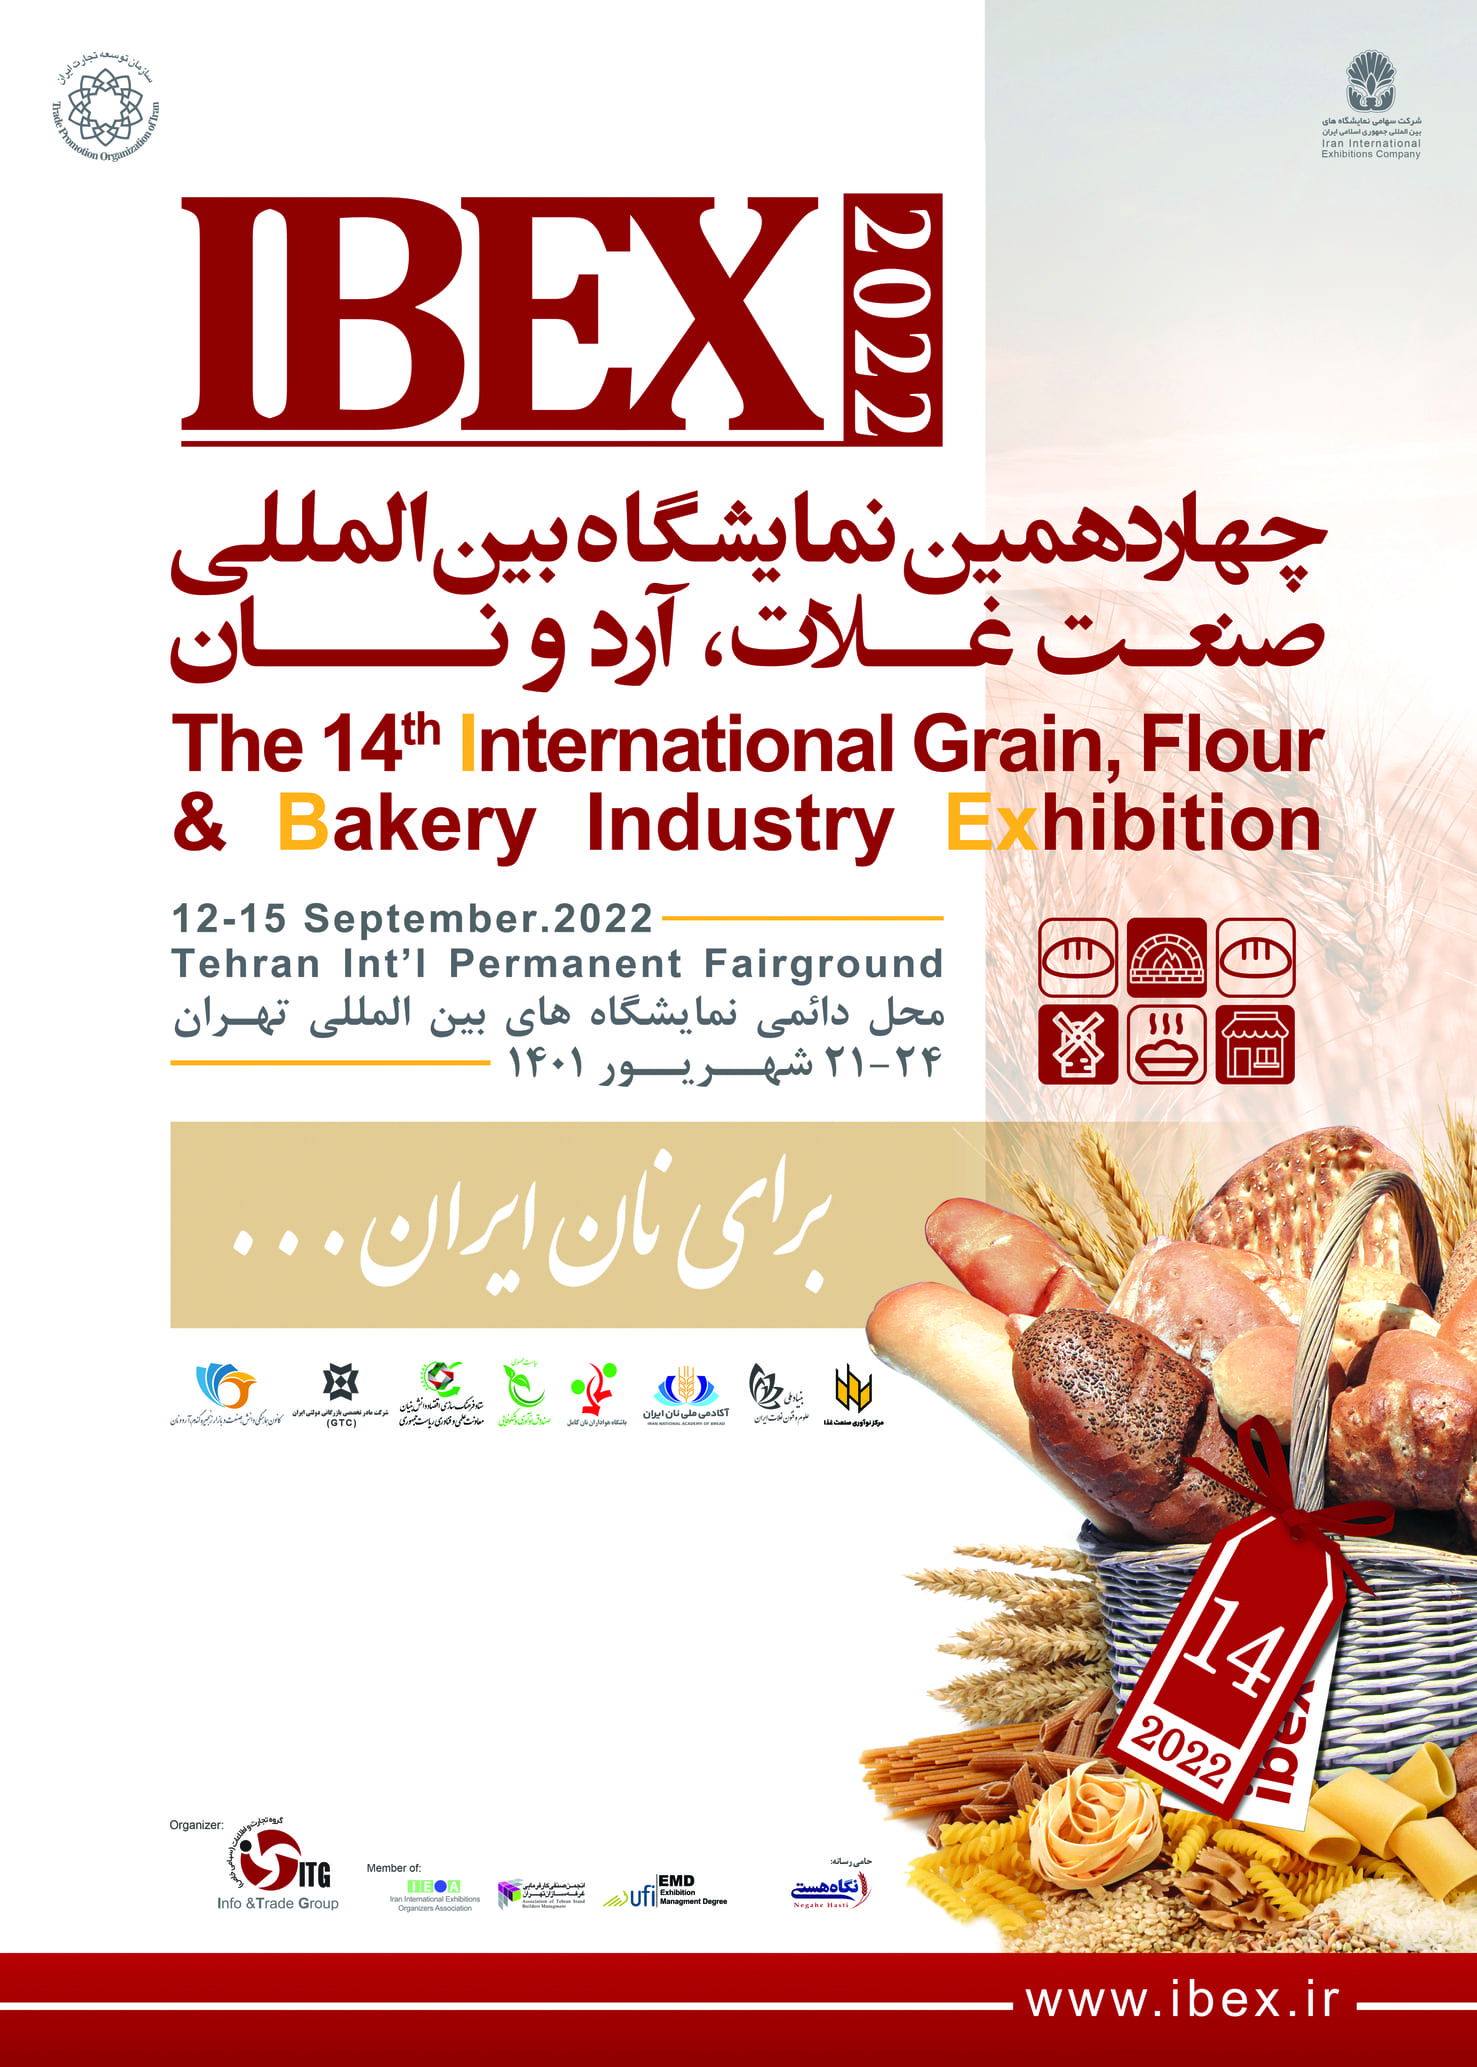 ثبت نام در چهاردهمین نمایشگاه بین المللی صنعت غلات، آرد و نان (IBEX 2022) آغاز شد.